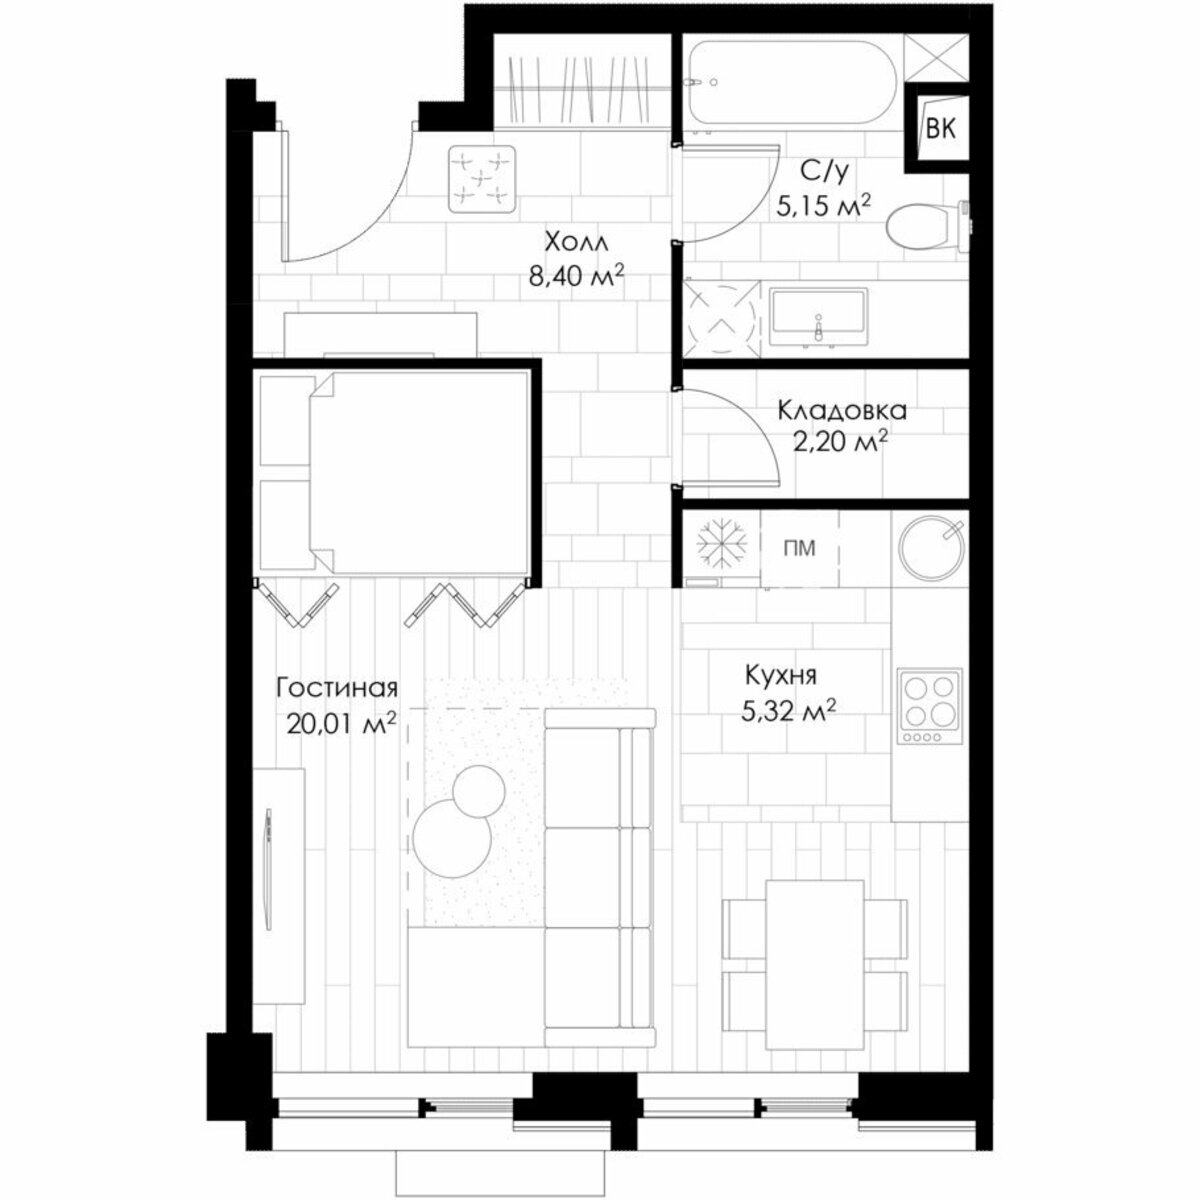 Распространенная планировка современной однокомнатной квартиры